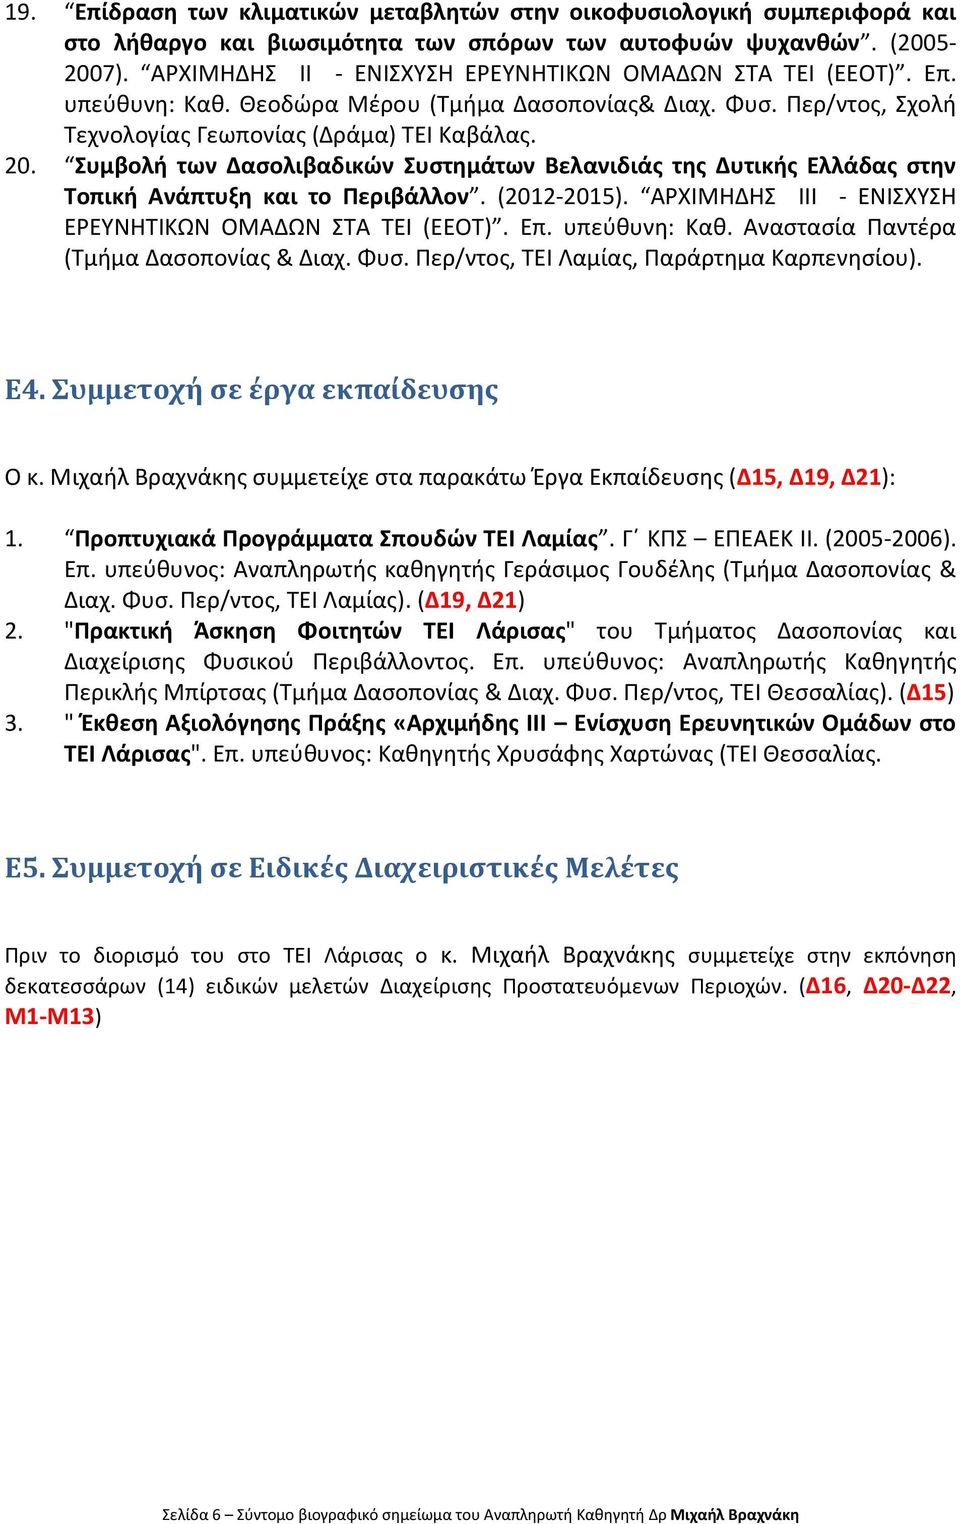 Συμβολή των Δασολιβαδικών Συστημάτων Βελανιδιάς της Δυτικής Ελλάδας στην Τοπική Ανάπτυξη και το Περιβάλλον. (2012-2015). ΑΡΧΙΜΗΔΗΣ ΙΙΙ - ΕΝΙΣΧΥΣΗ ΕΡΕΥΝΗΤΙΚΩΝ ΟΜΑΔΩΝ ΣΤΑ ΤΕΙ (ΕΕΟΤ). Επ. υπεύθυνη: Καθ.